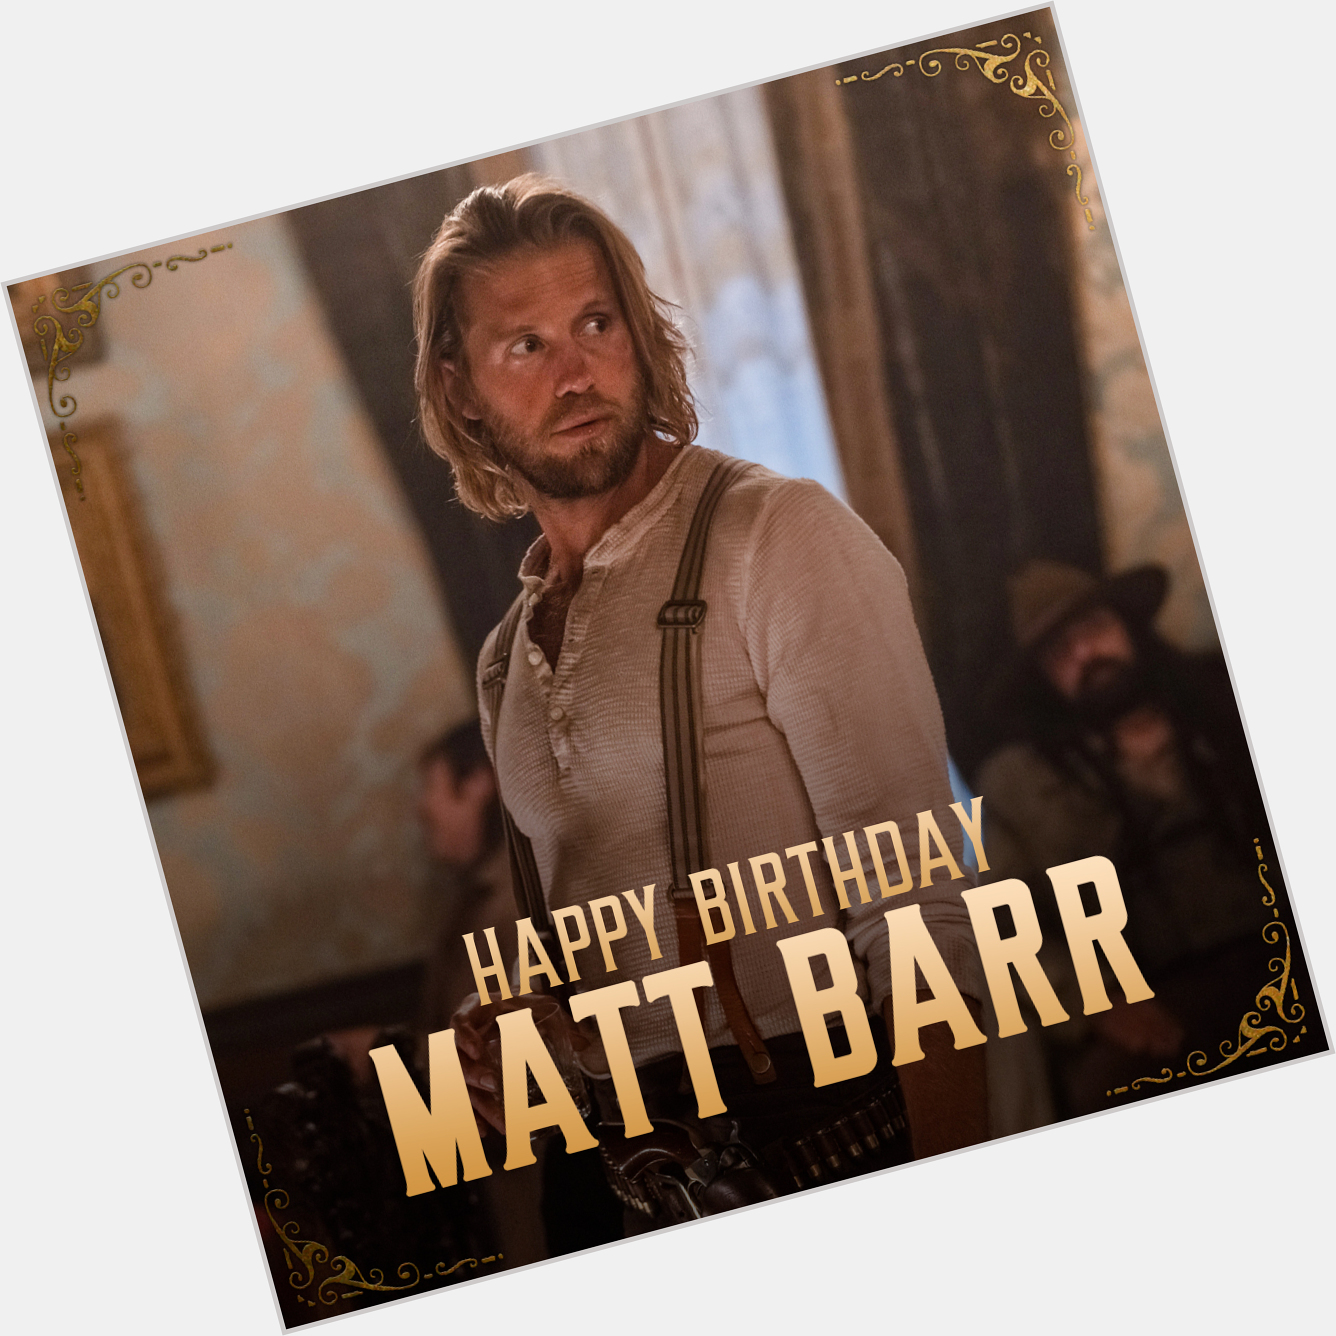 Cheers Happy birthday, Matt Barr  